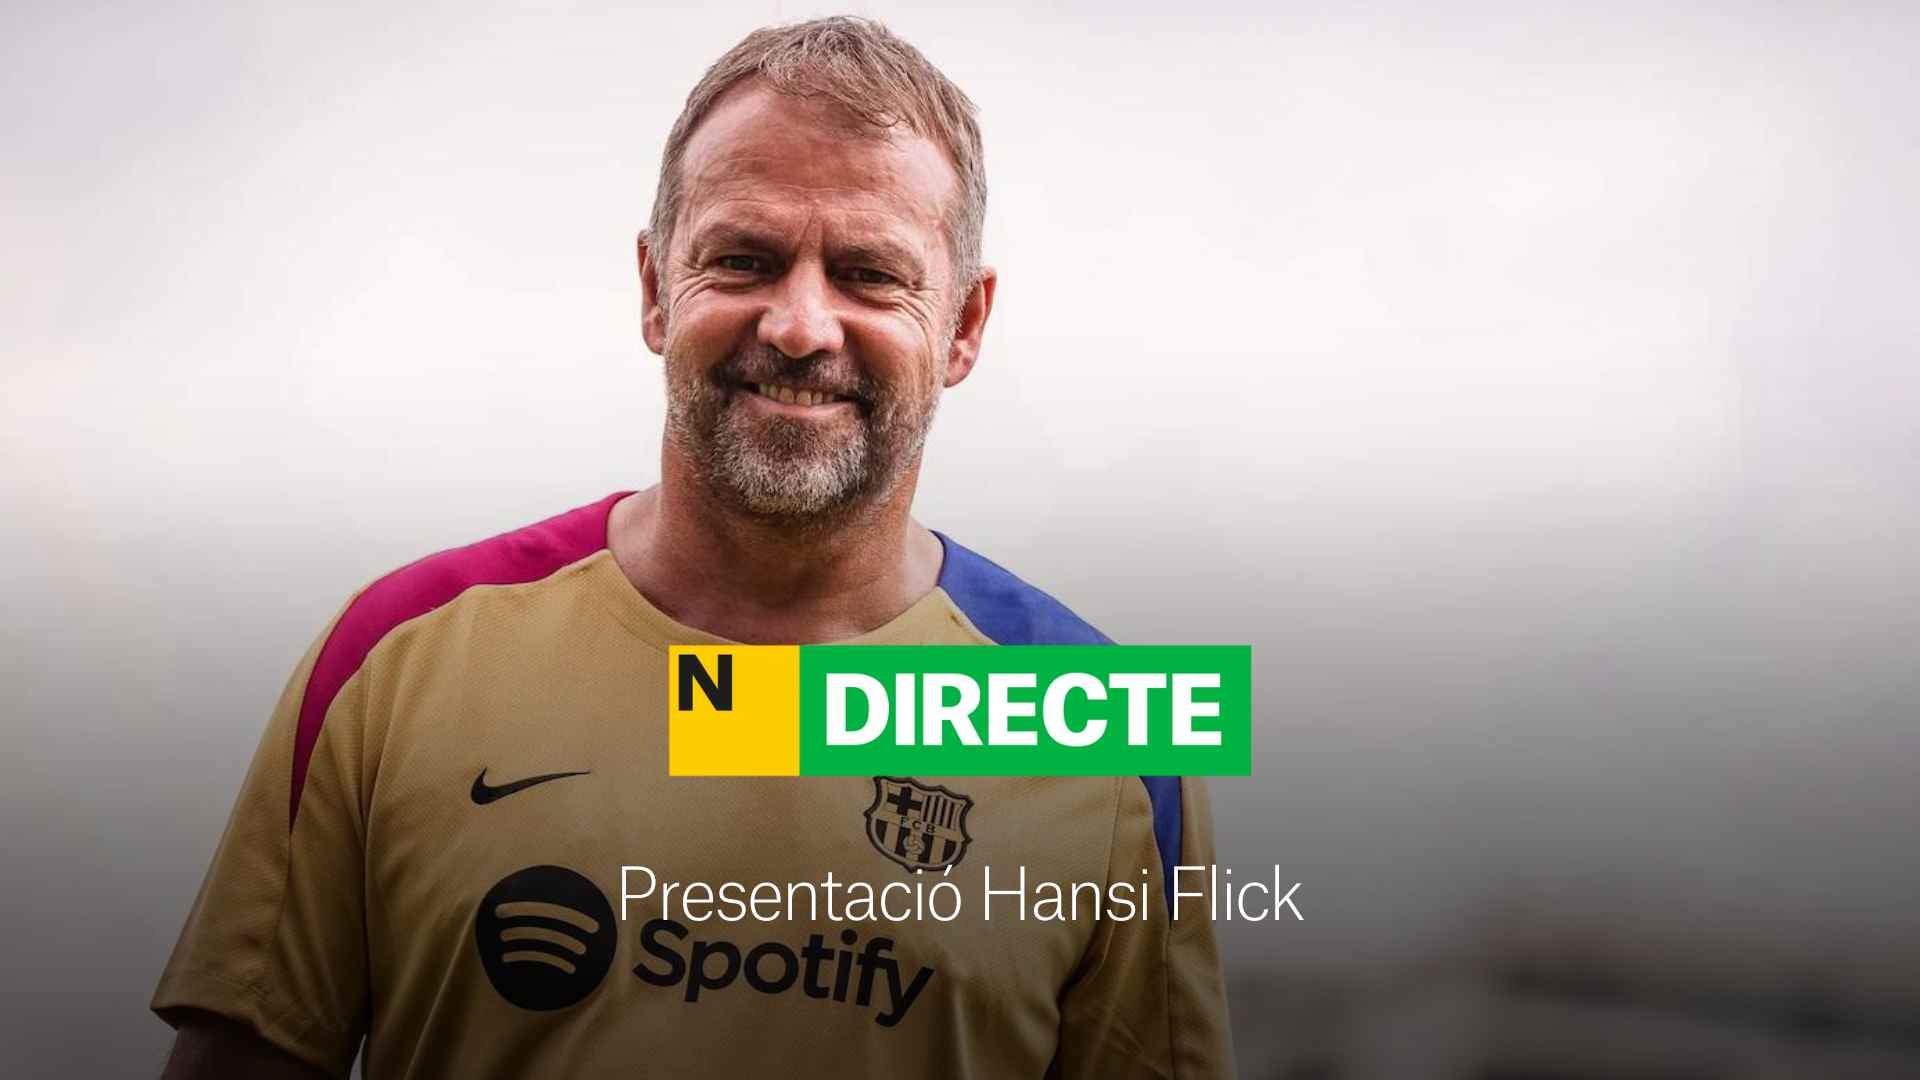 Presentación de Hansi Flick hoy como entrenador del Barça, DIRECTO